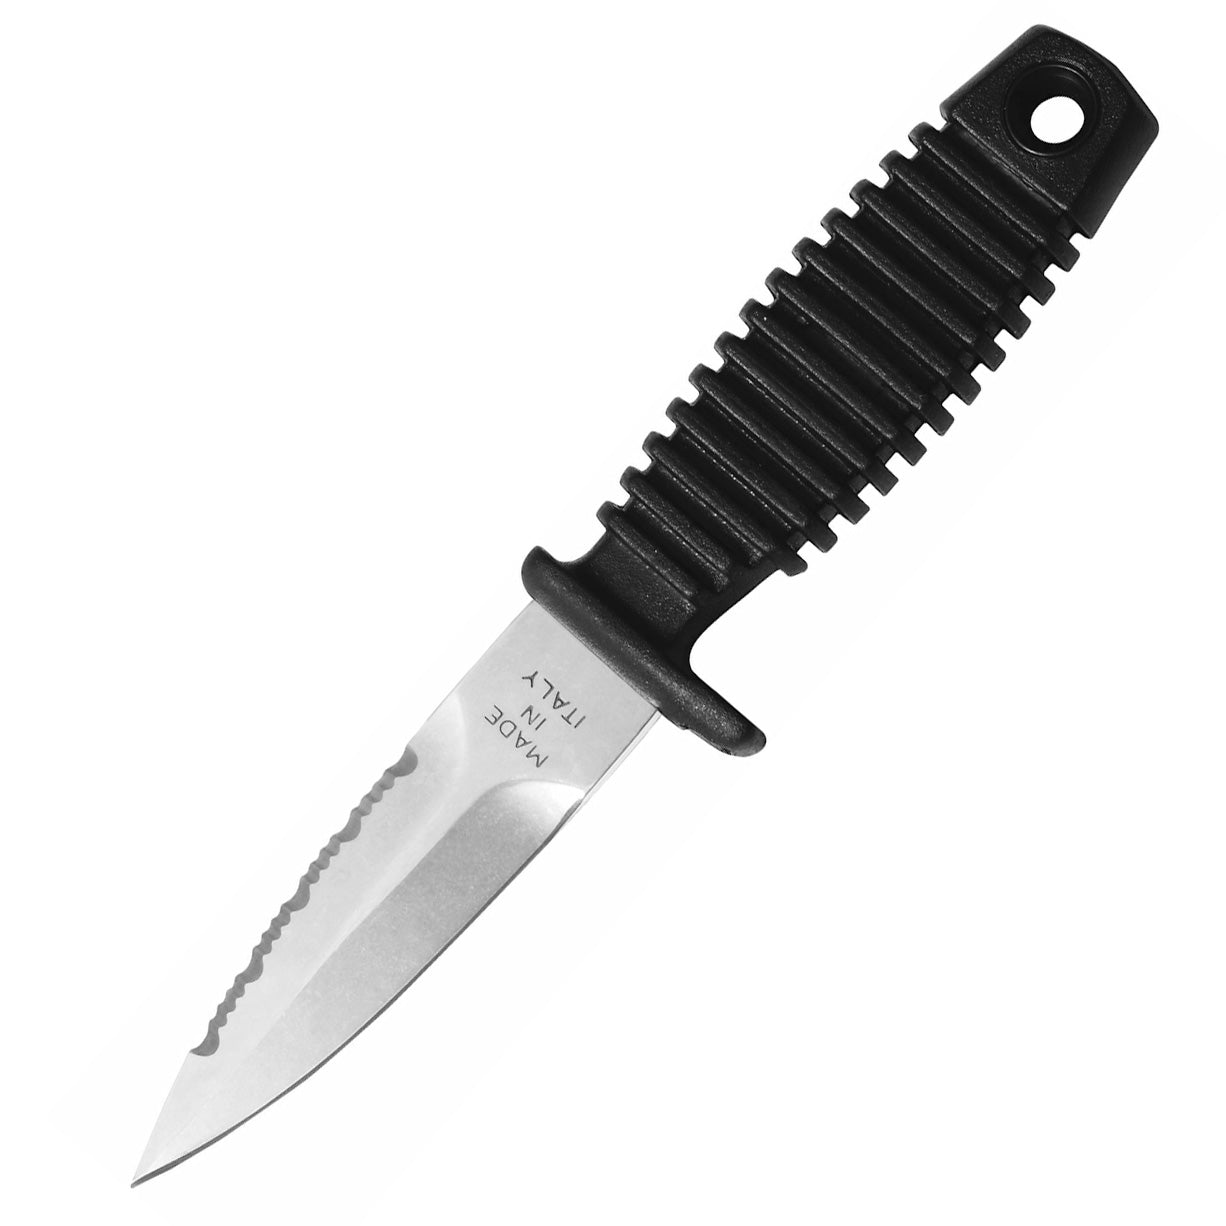 MAC Shark 9 Apnea knife